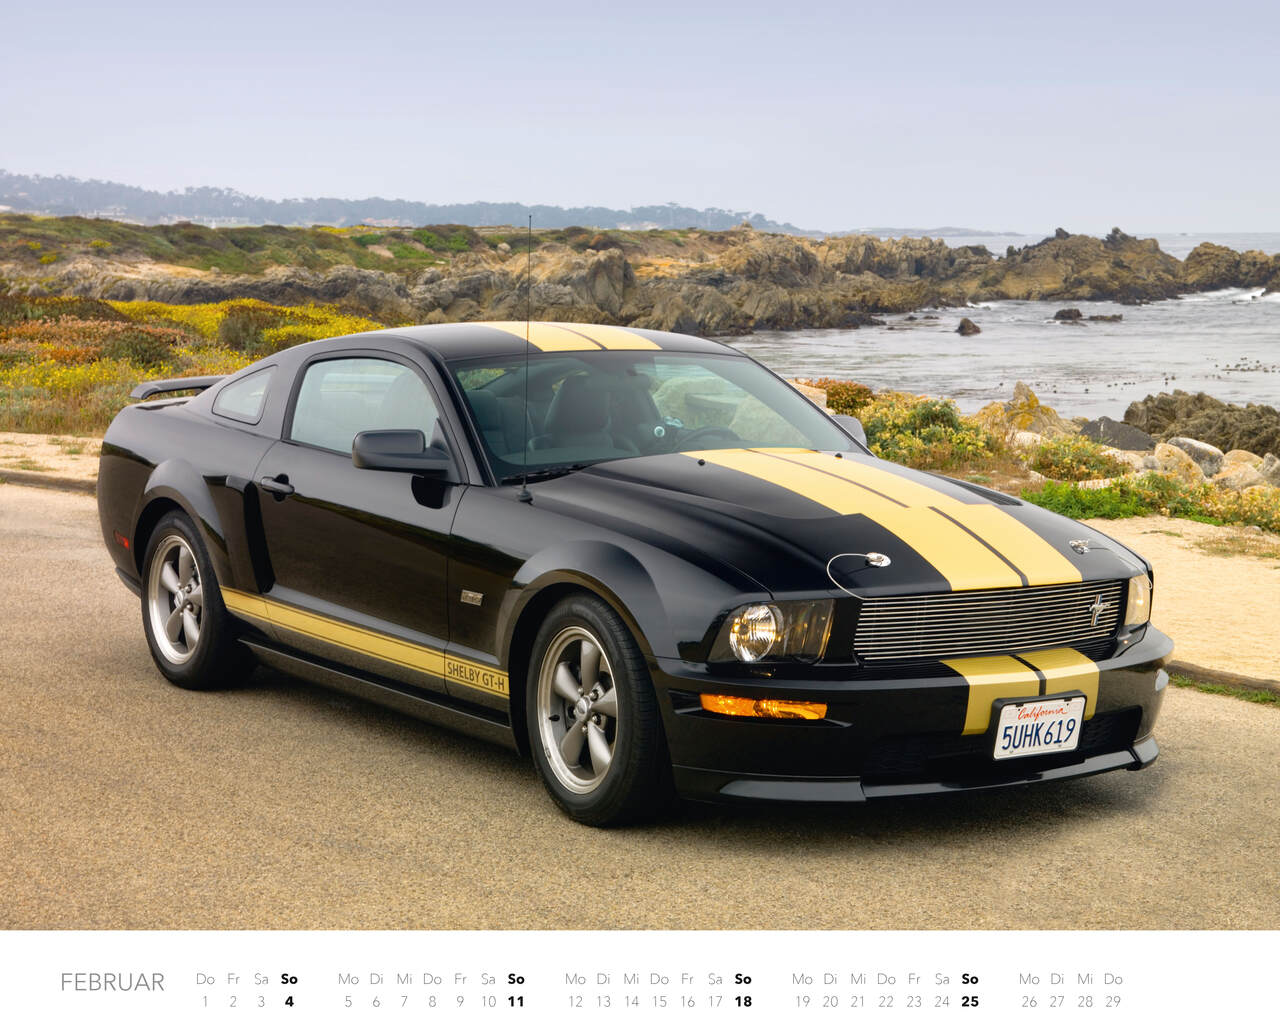 Ford Mustang Kalender 2024 (Spiralbindung) Stadtbuchhandlung